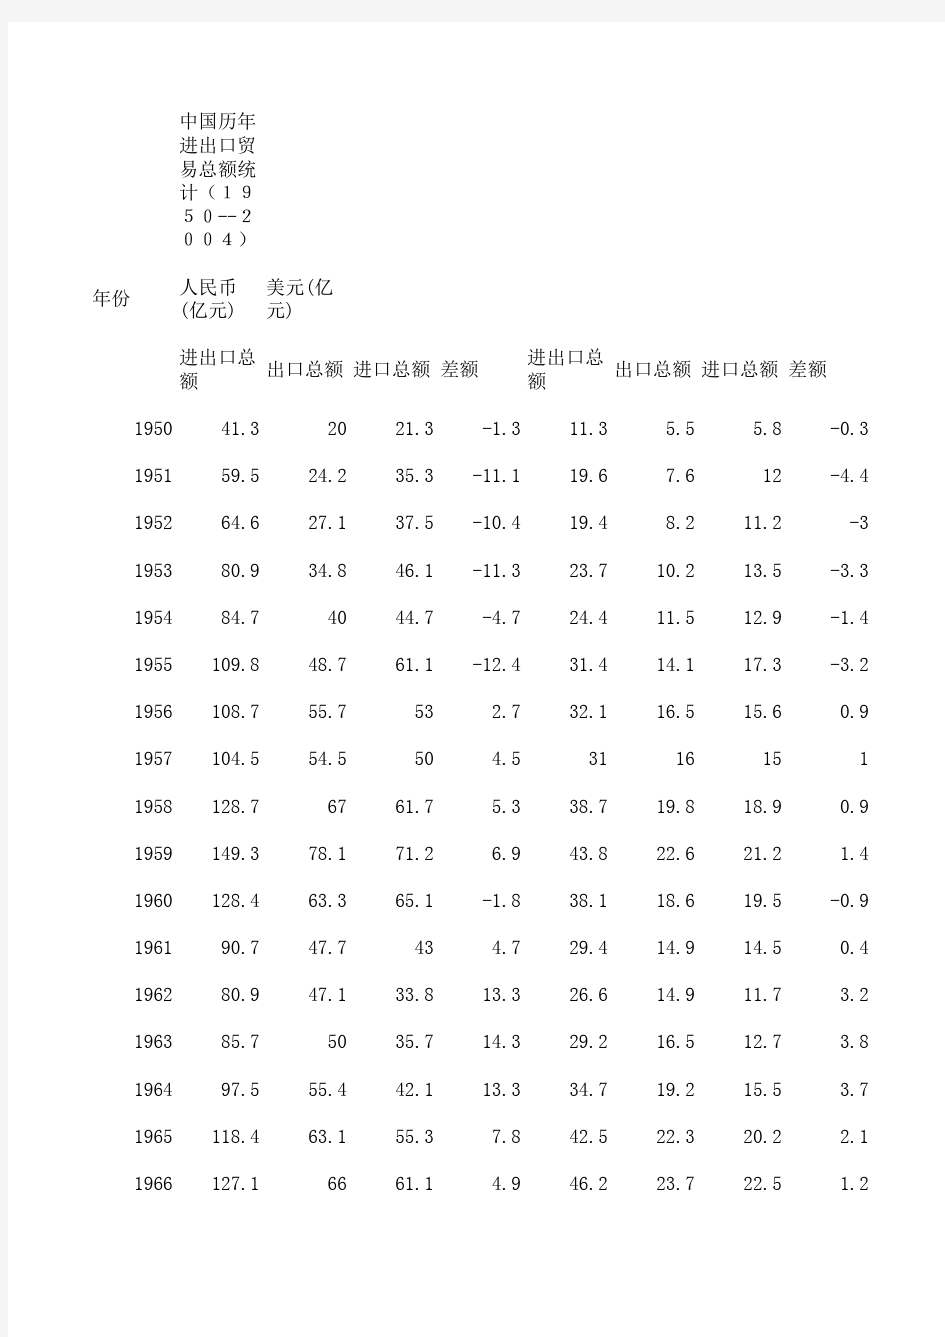 中国历年进出口贸易总额统计(1950--2004)